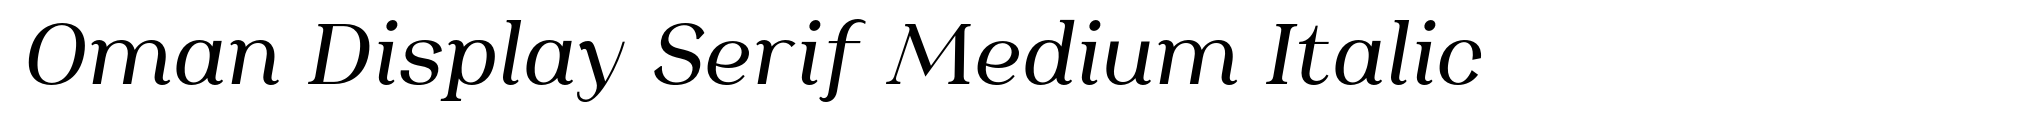 Oman Display Serif Medium Italic image